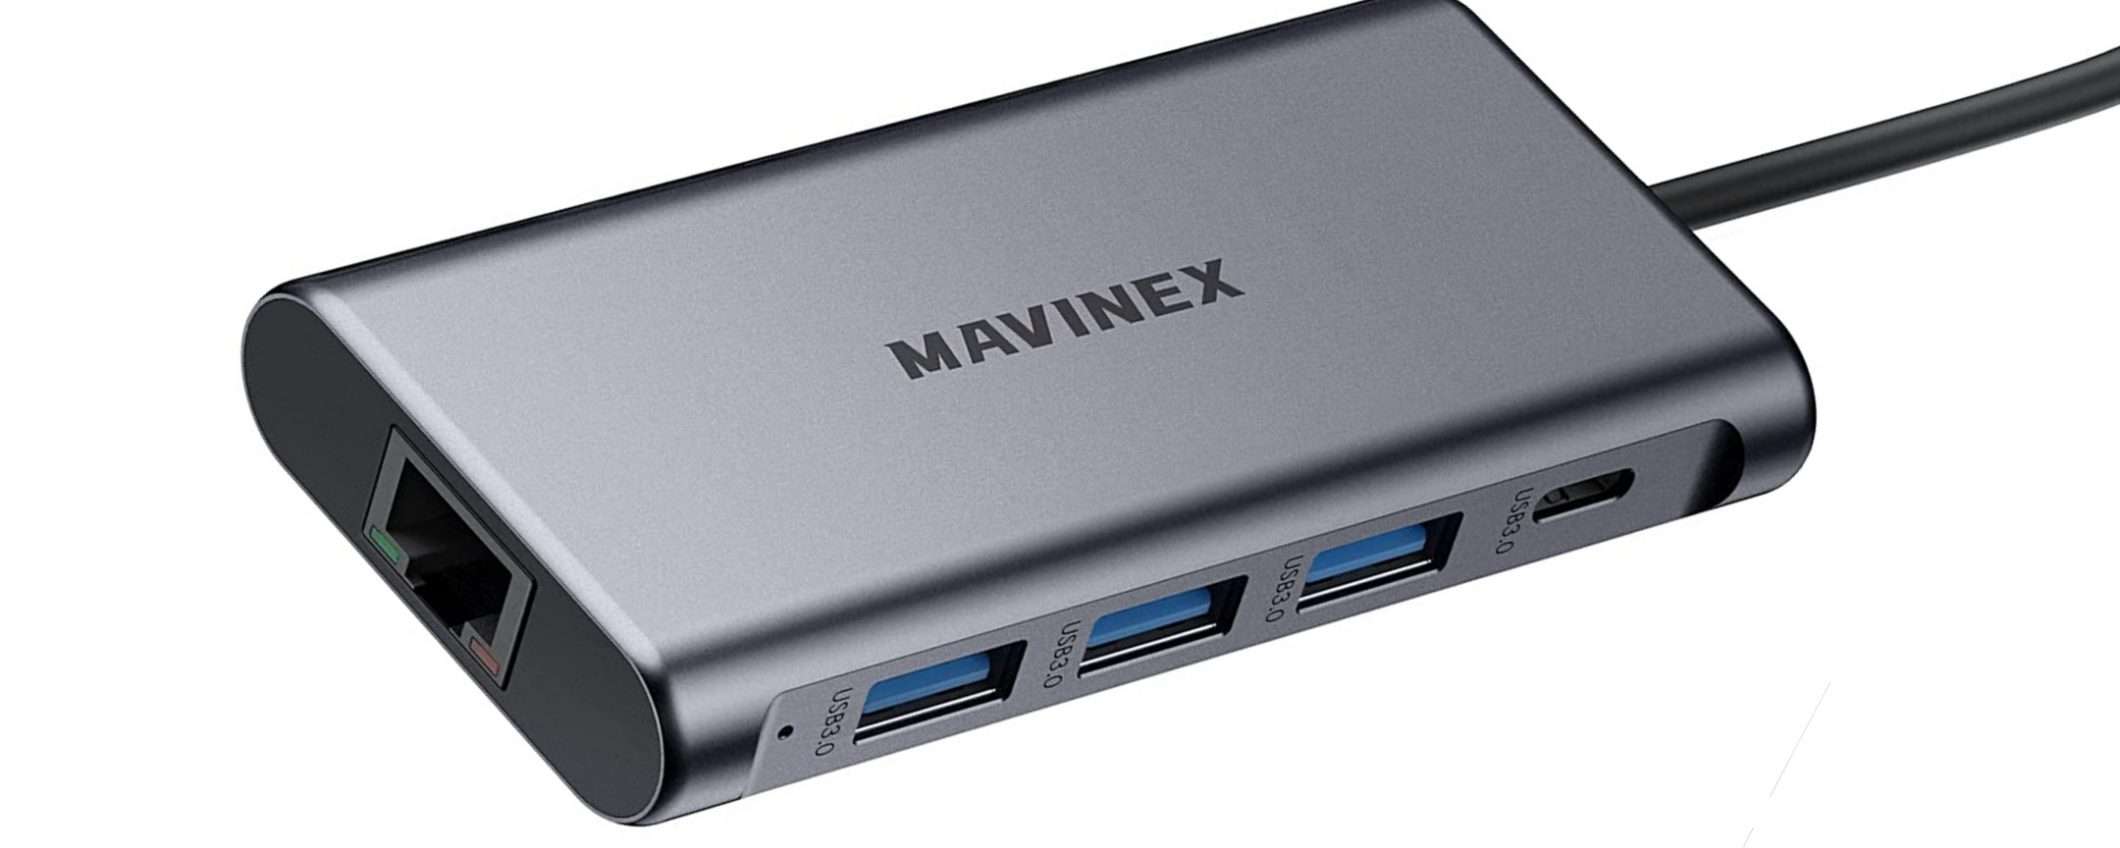 Mavinex HUB USB-C 9 in 1: la soluzione professionale per il tuo PC o Mac